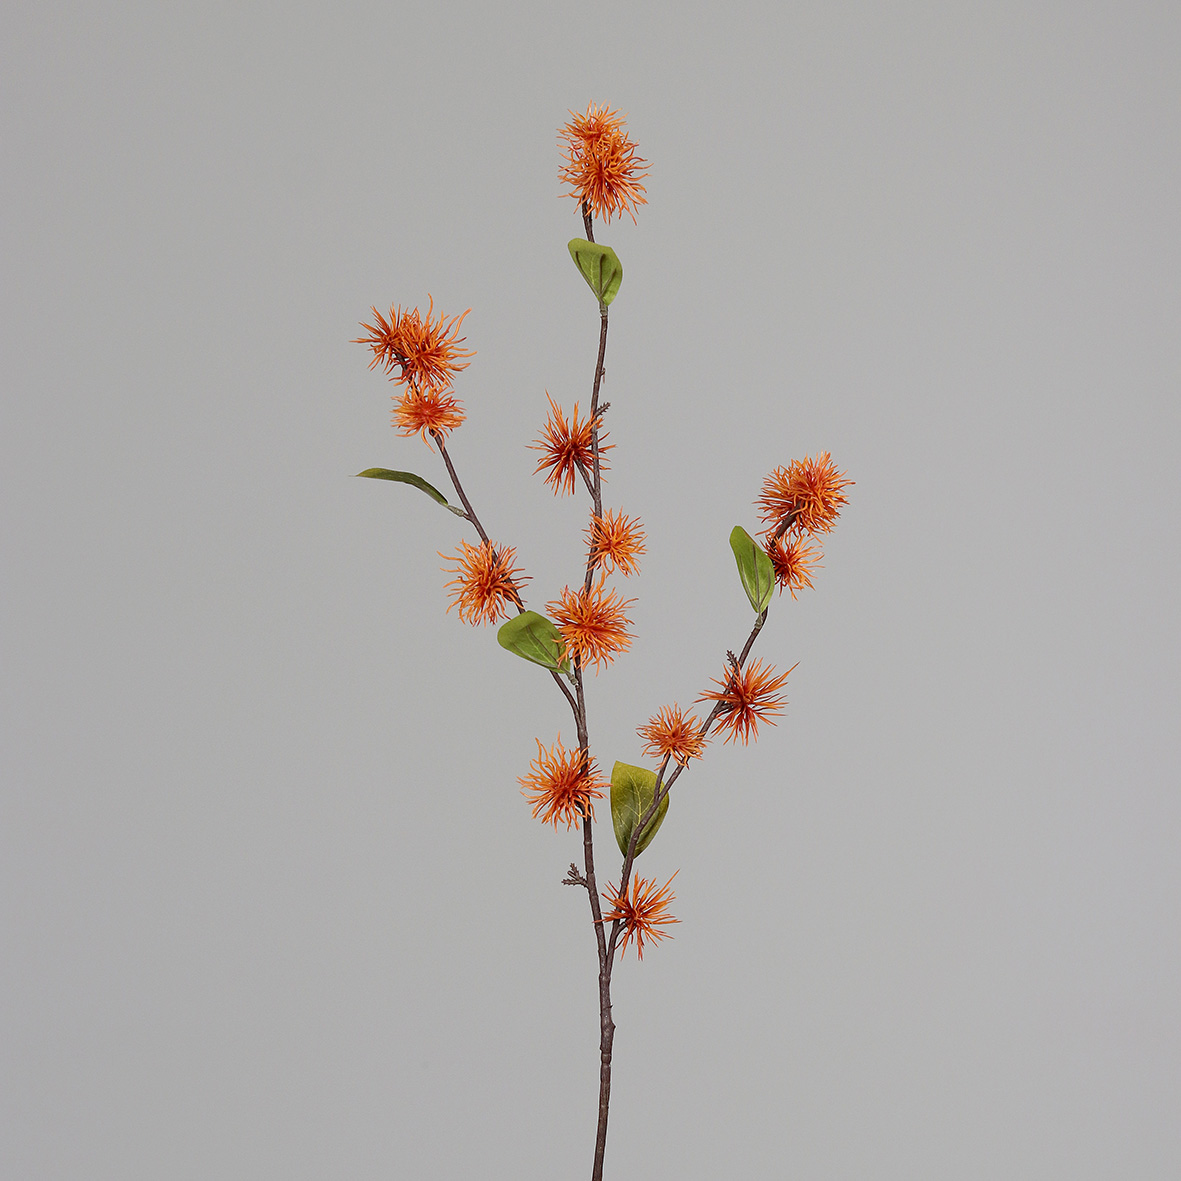 Zaubernusszweig / Hamameliszweig 100cm orange DP Kunstblumen Kunstzweig künstliche Blumen Hamamelis